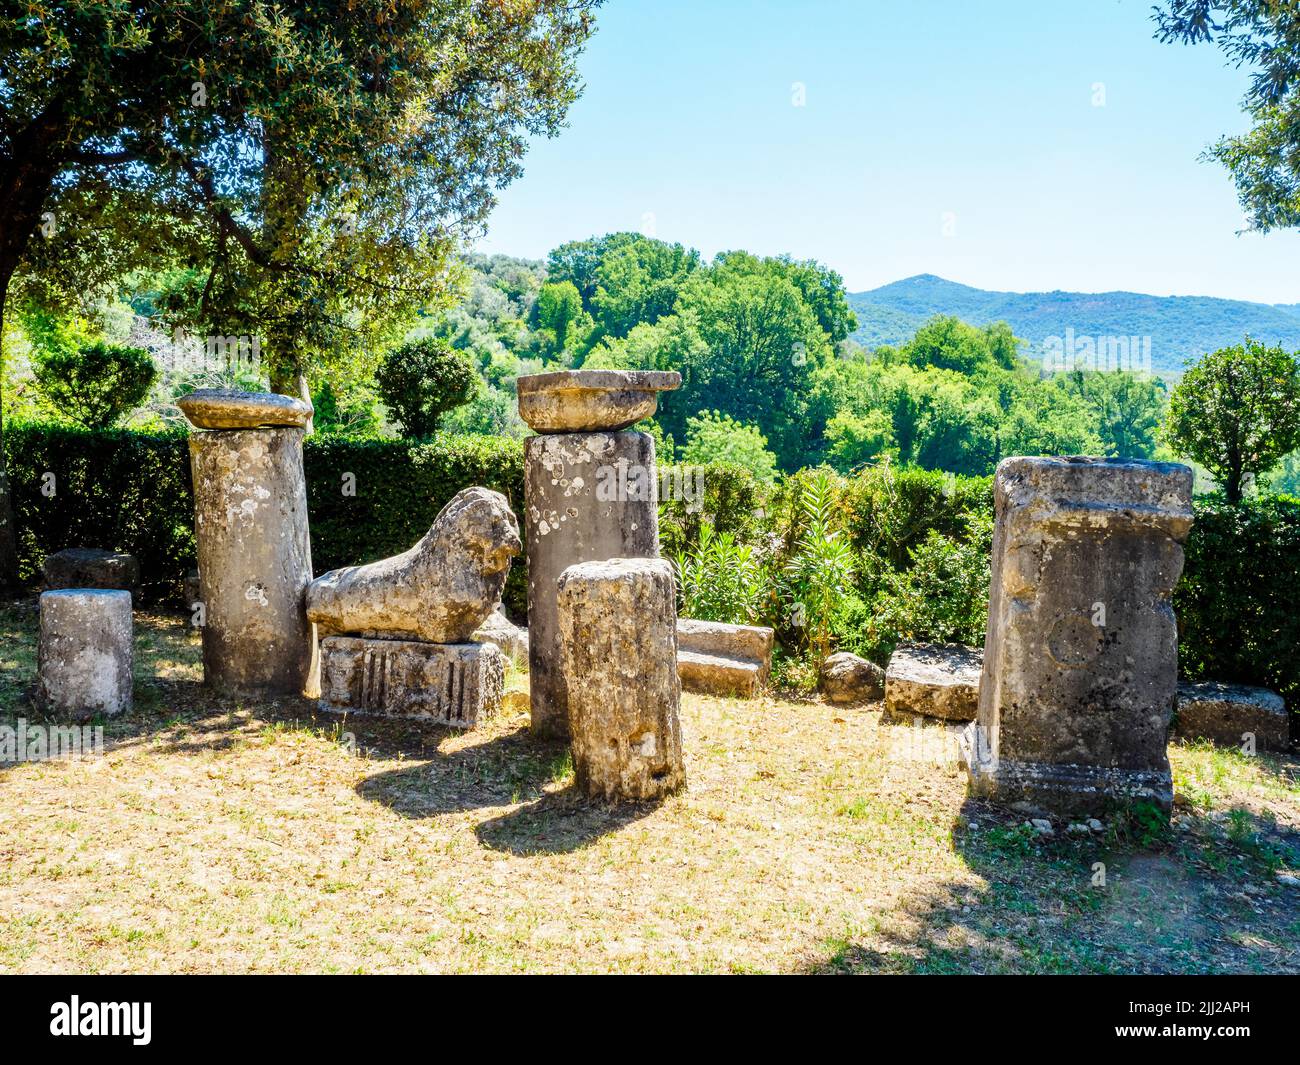 Ruines romaines anciennes dans le jardin du Sanctuaire de Santa Vittoria - Monteleone Sabino, Rieti, Italie Banque D'Images